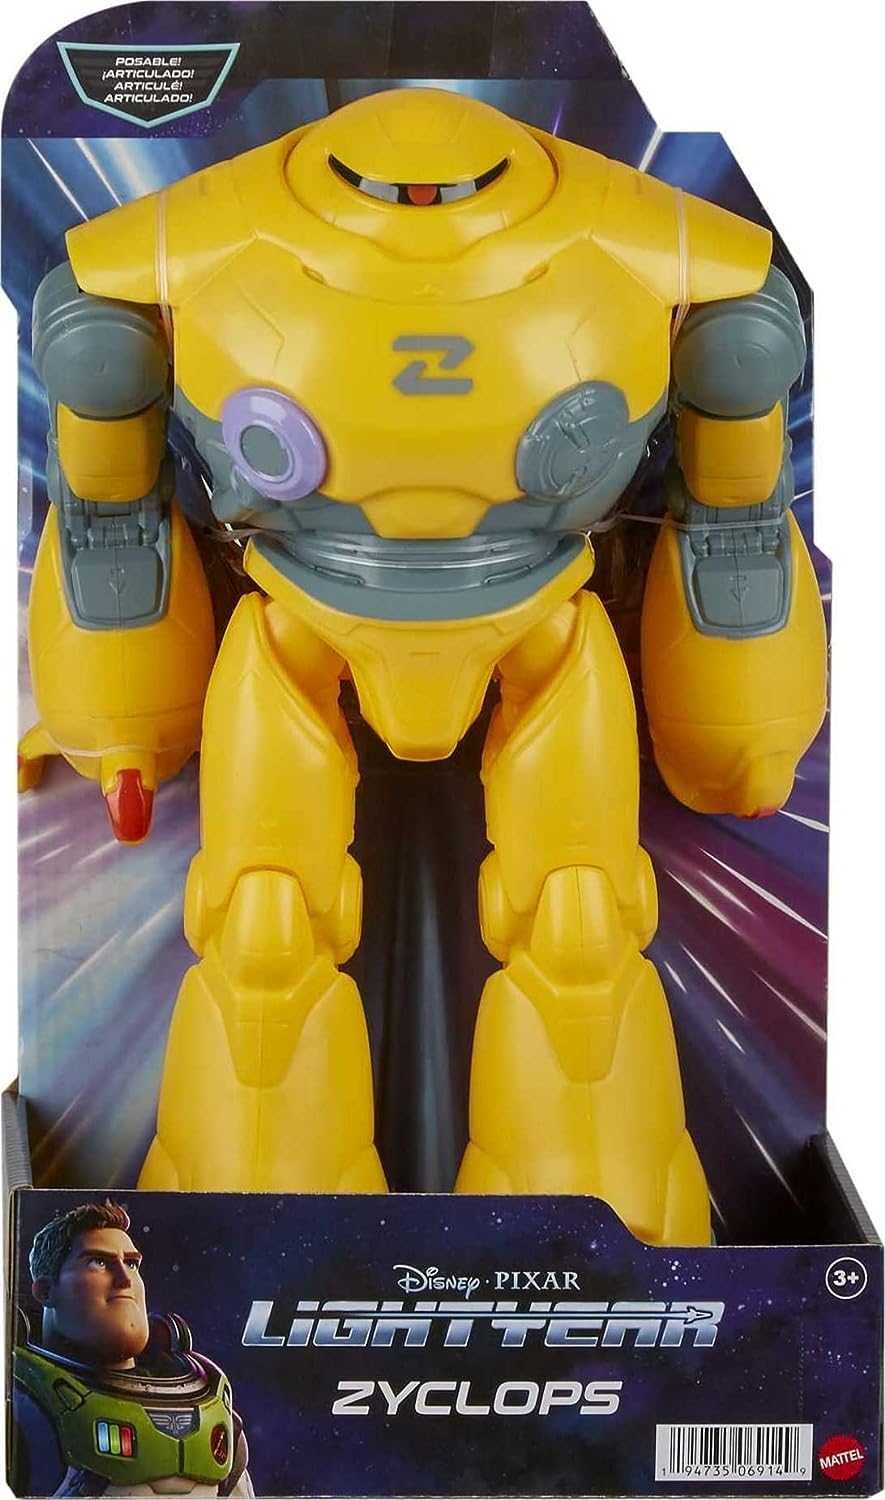 Фигурка Disney Pixar Lightyear Zyclops Robot робот Циклоп